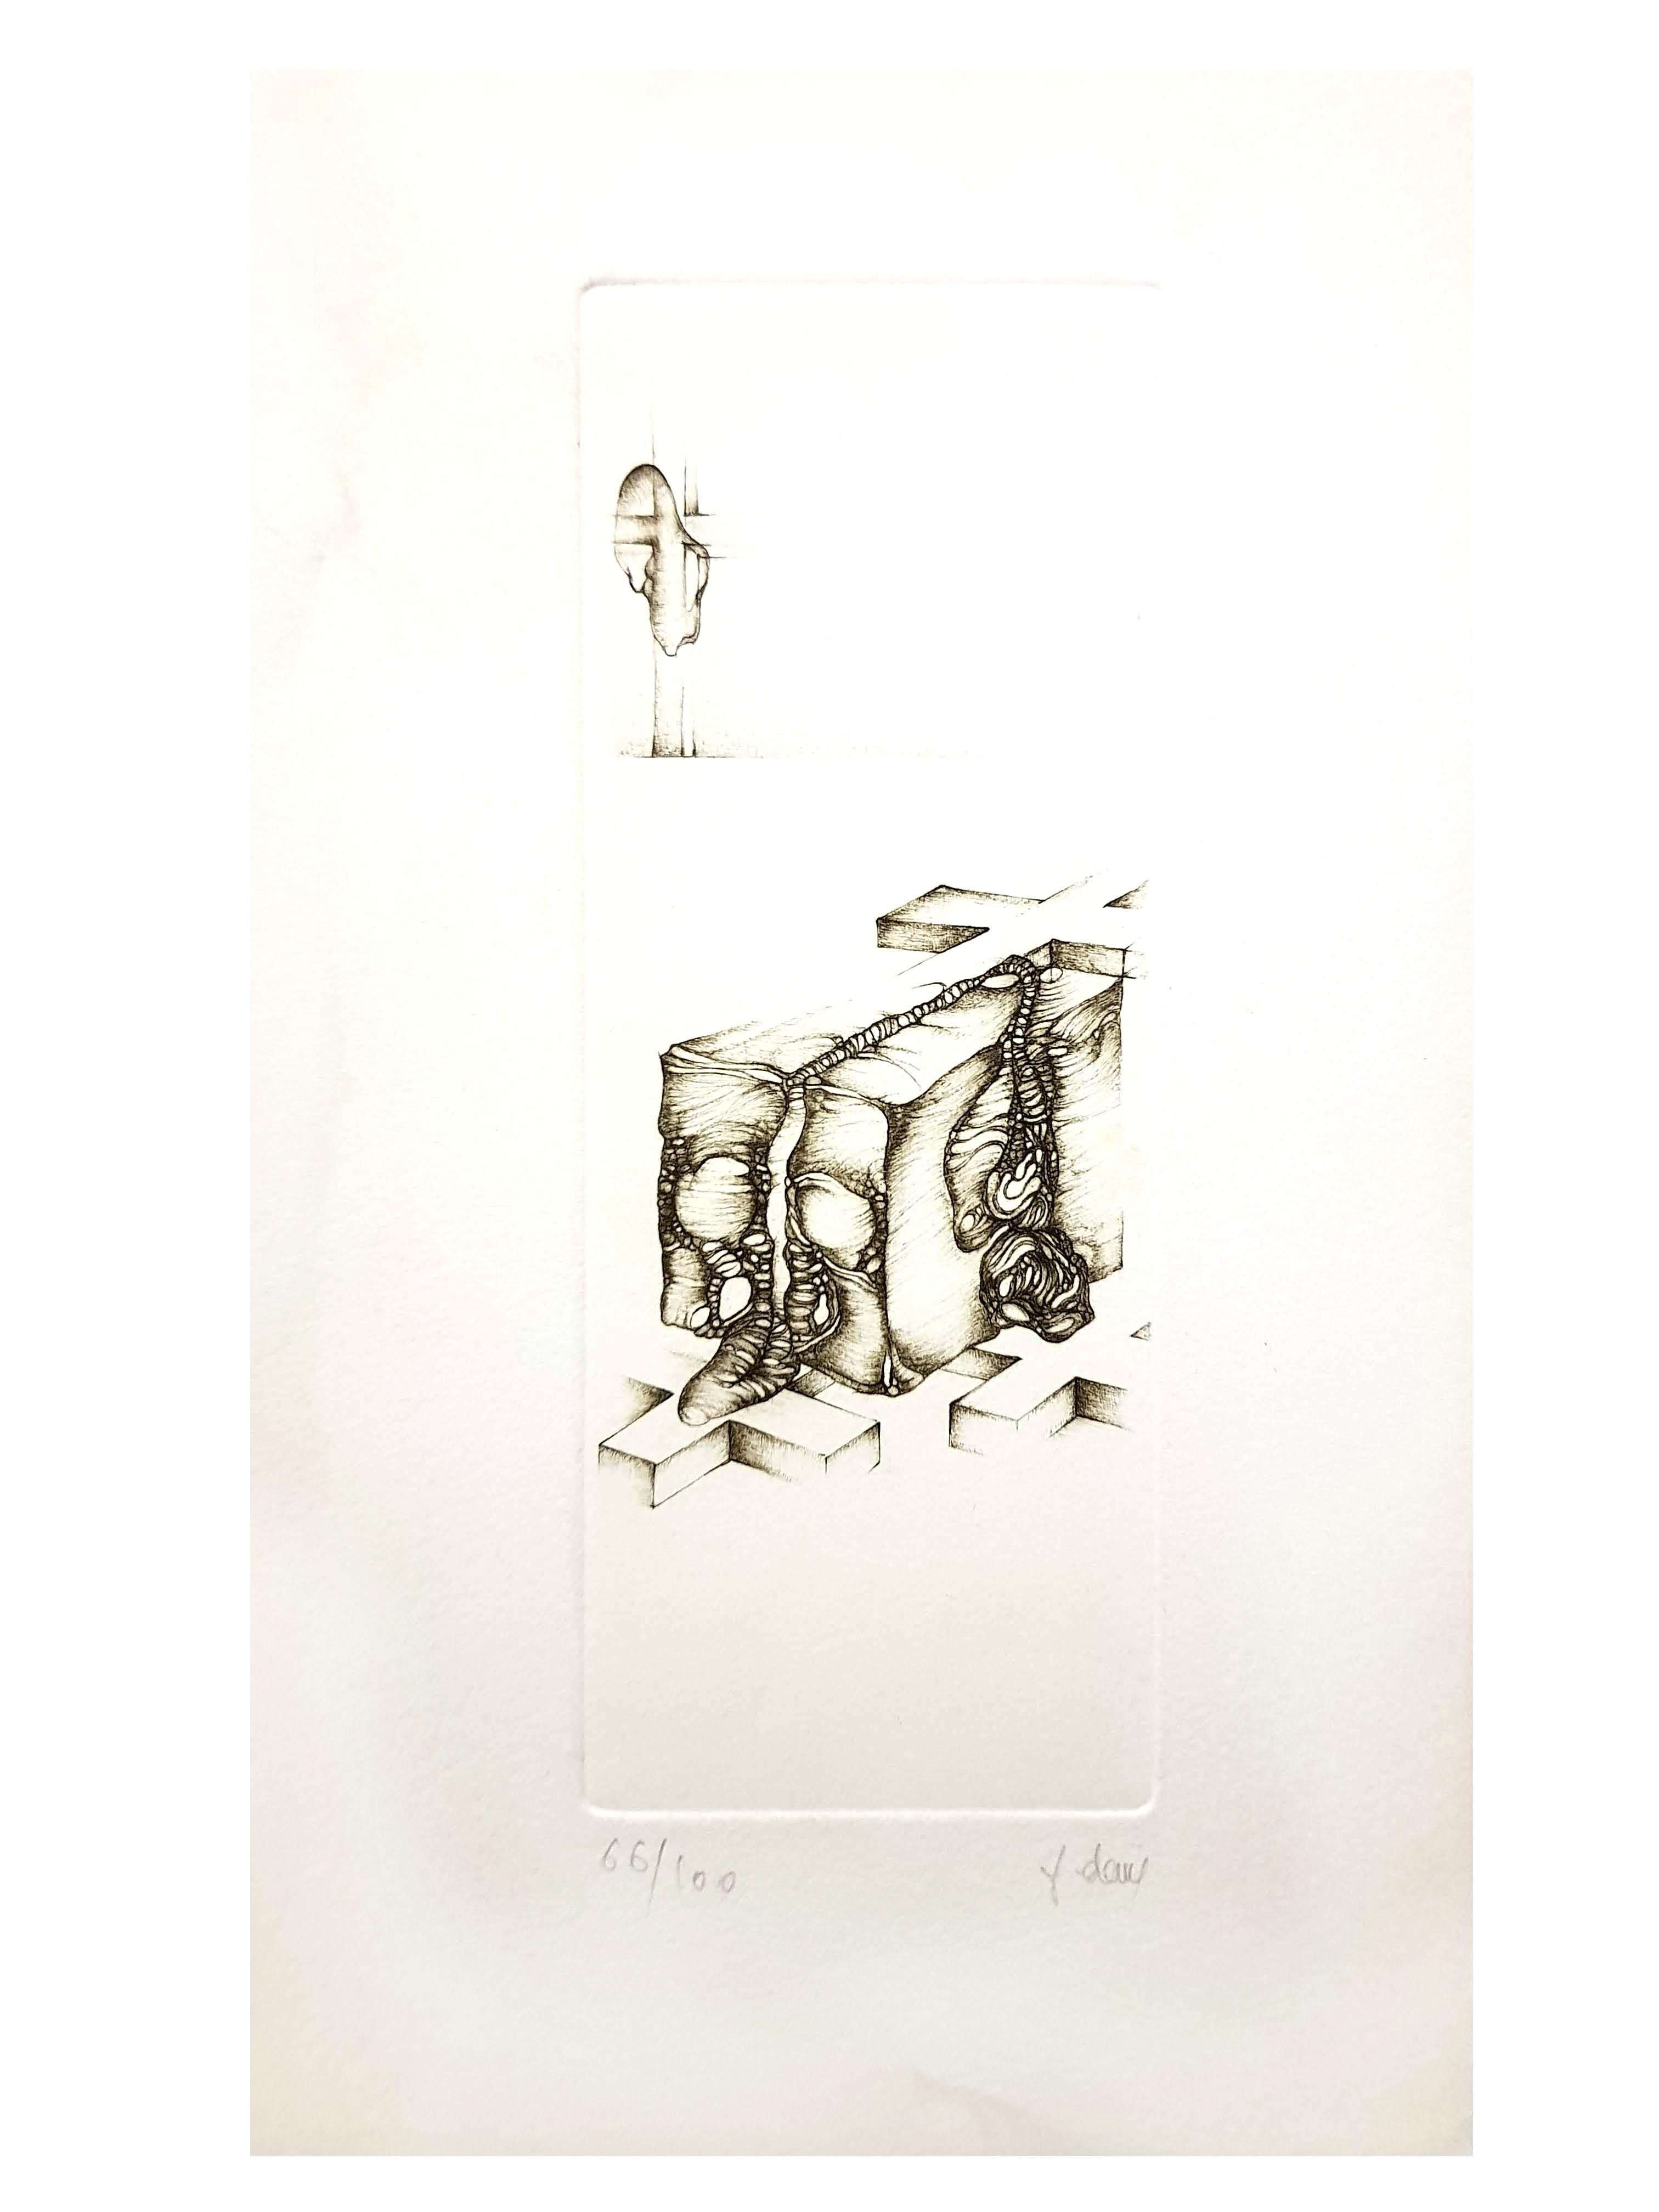 Fred Deux - Grey IV - Signierte Original-Radierung
Signiert und nummeriert 
Auflage von 100 Stück
Abmessungen: 24 x 14 cm

Fred Deux

Fred Deux, Illustrator, Mundartdichter, Schriftsteller und, unter dem Pseudonym Jean Douassot, Autor des Kultbuchs